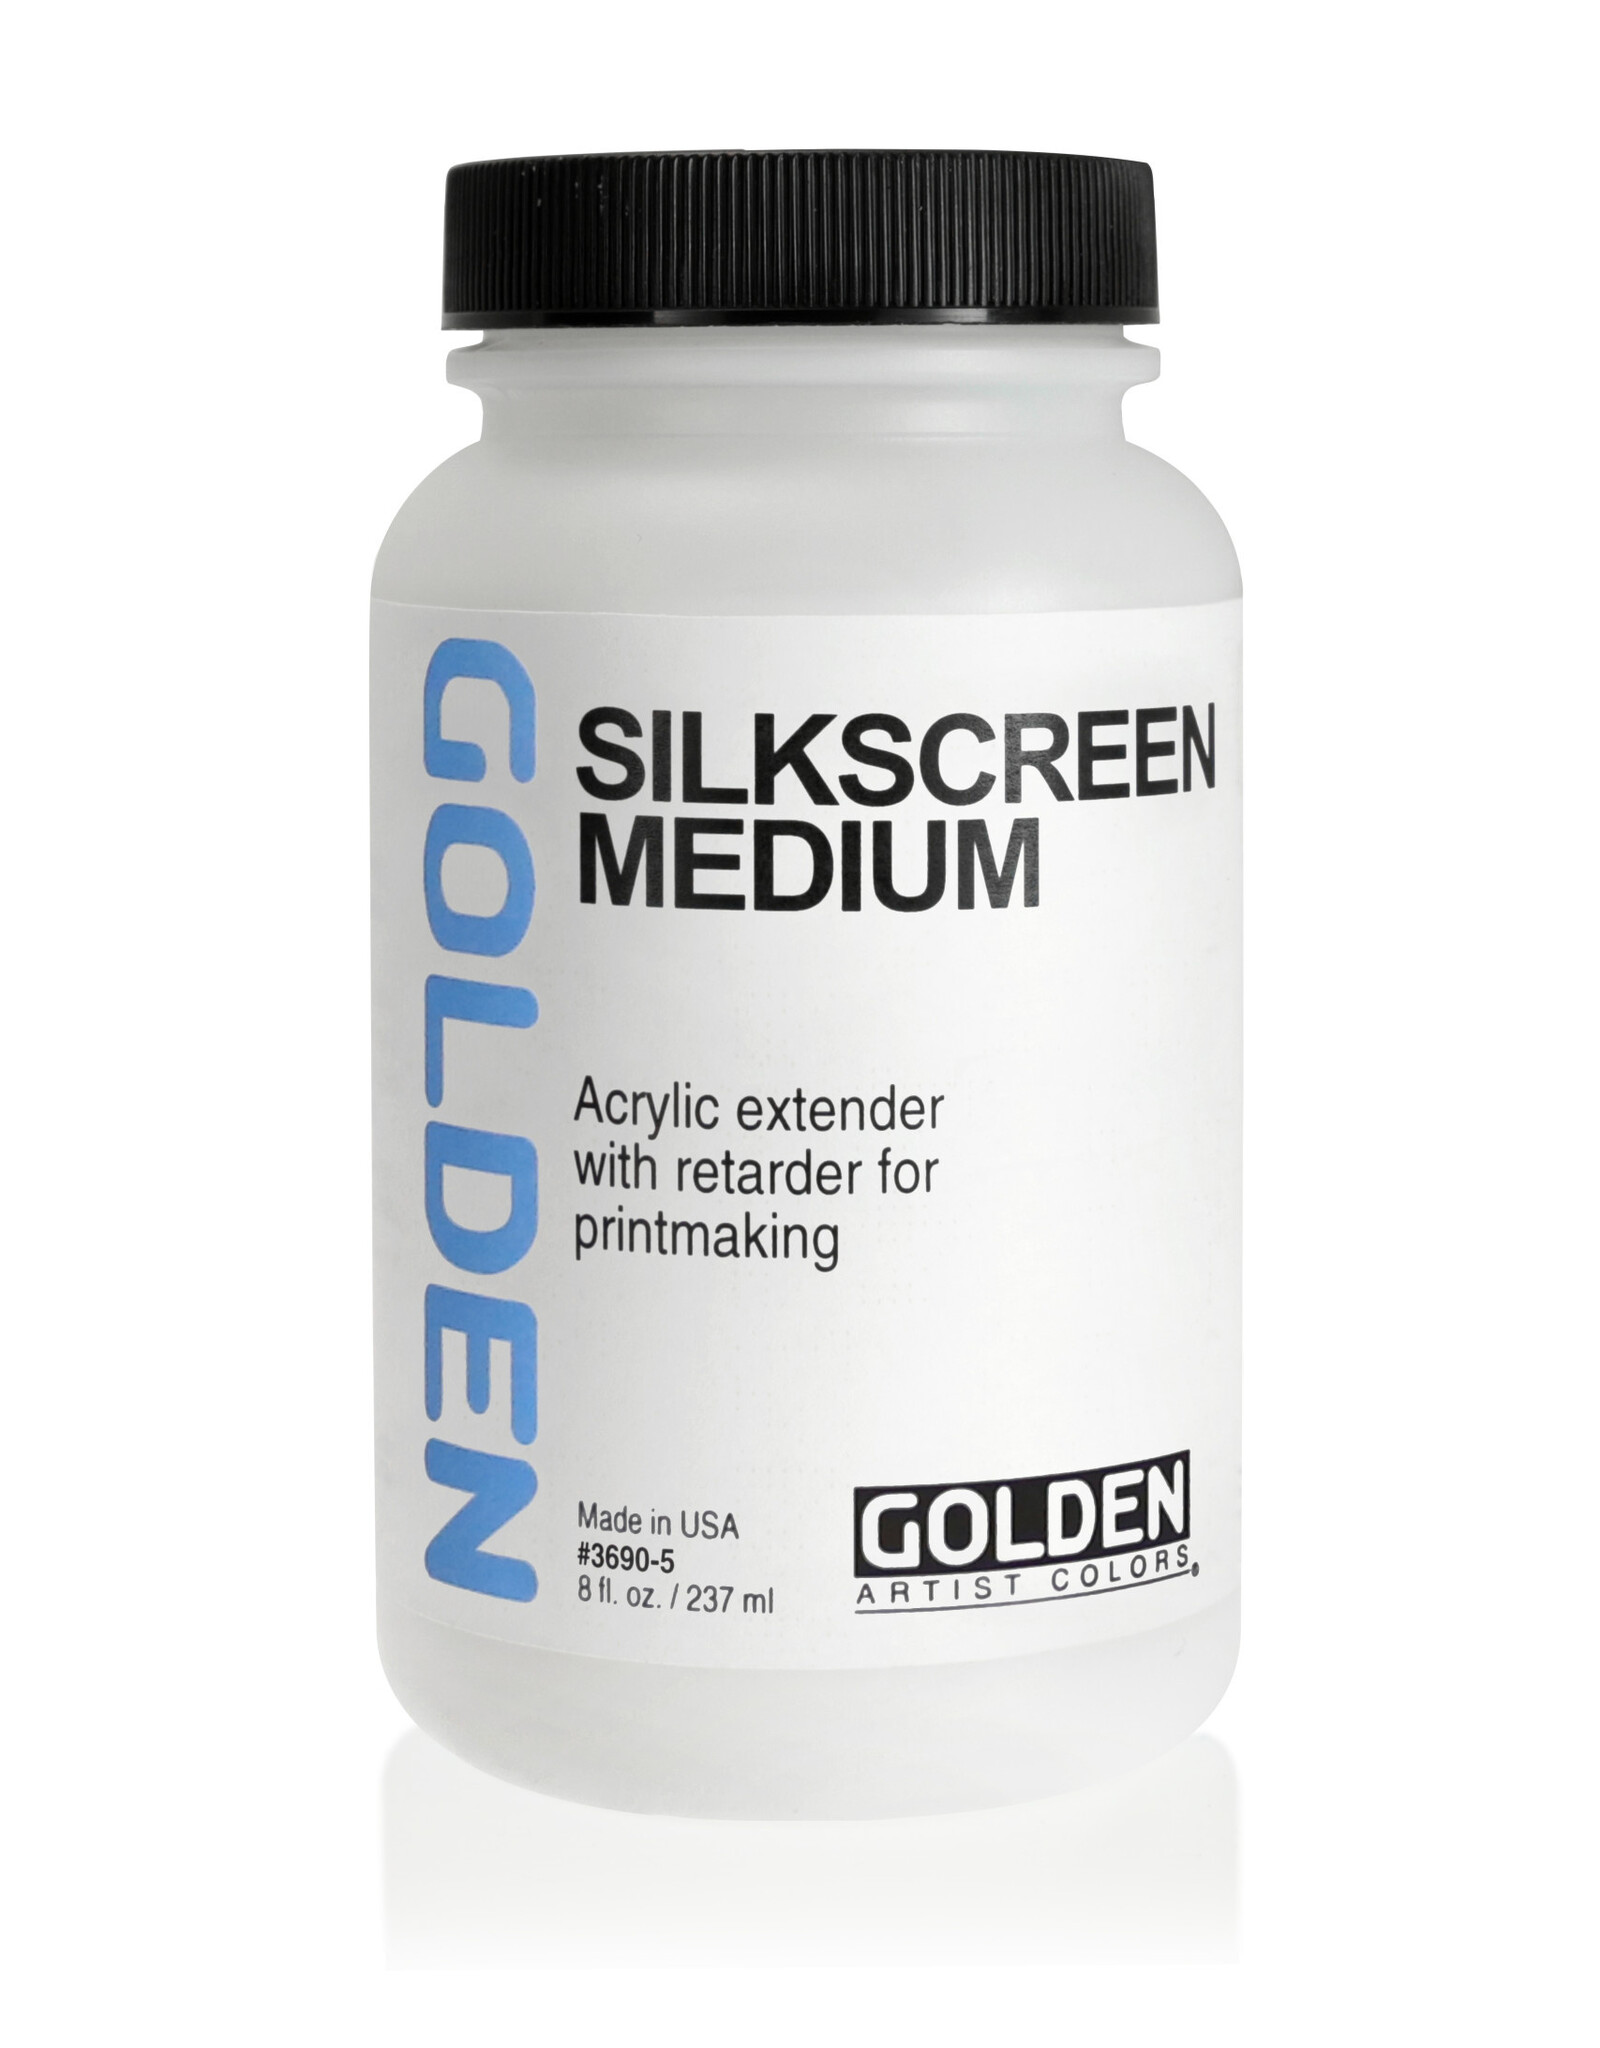 Golden Golden Silkscreen Medium 8 oz jar